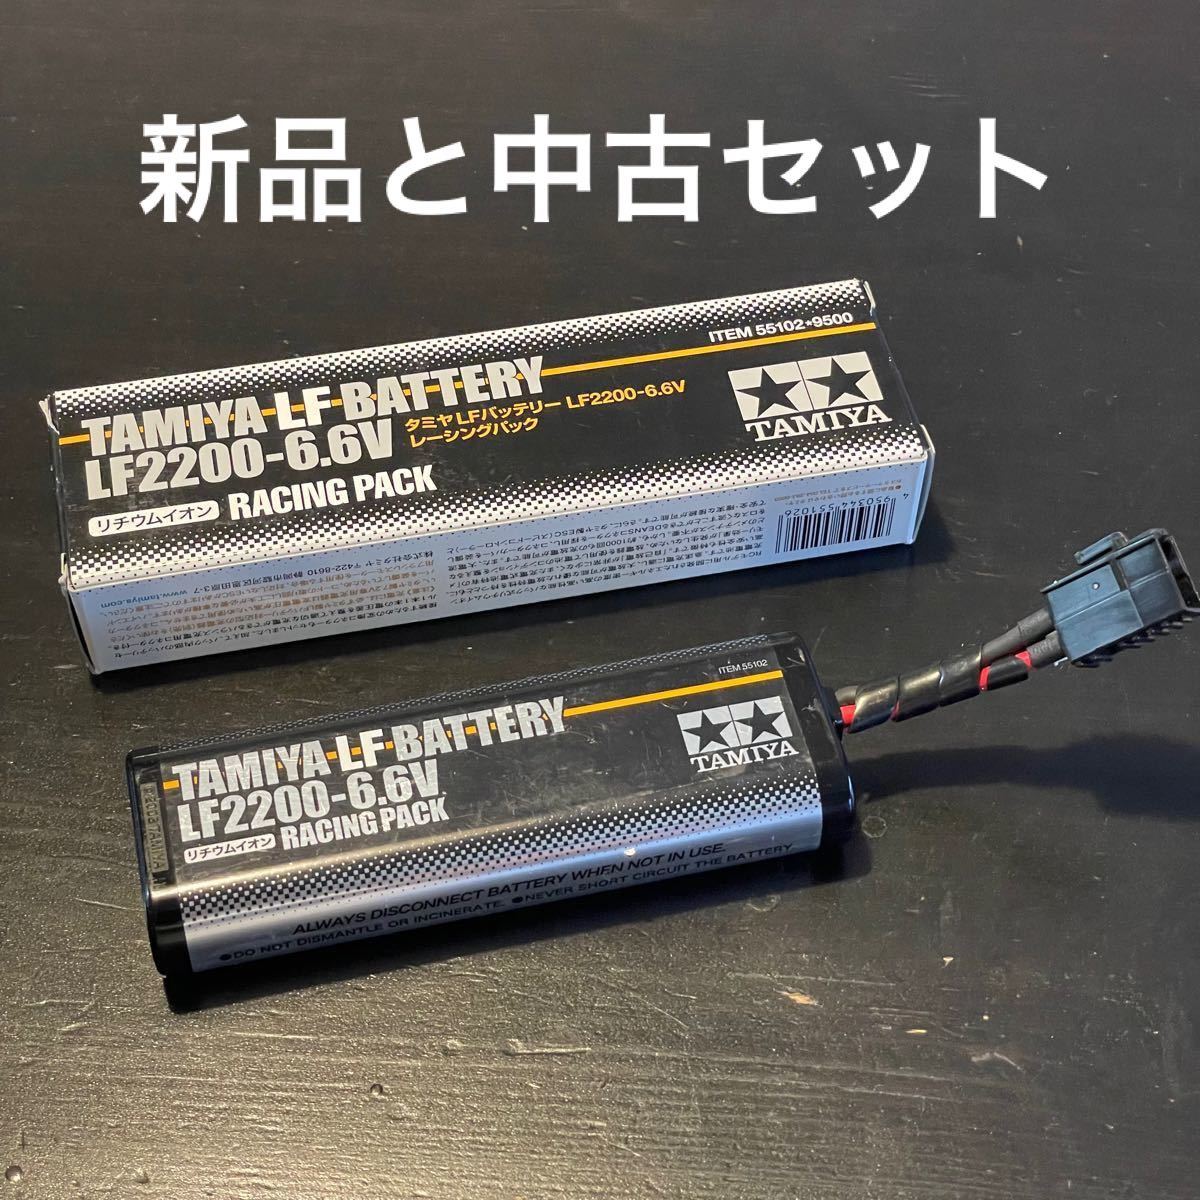 タミヤ TAMIYA リフェバッテリー RACING PACK LF2200-6.6V 新品と中古セット